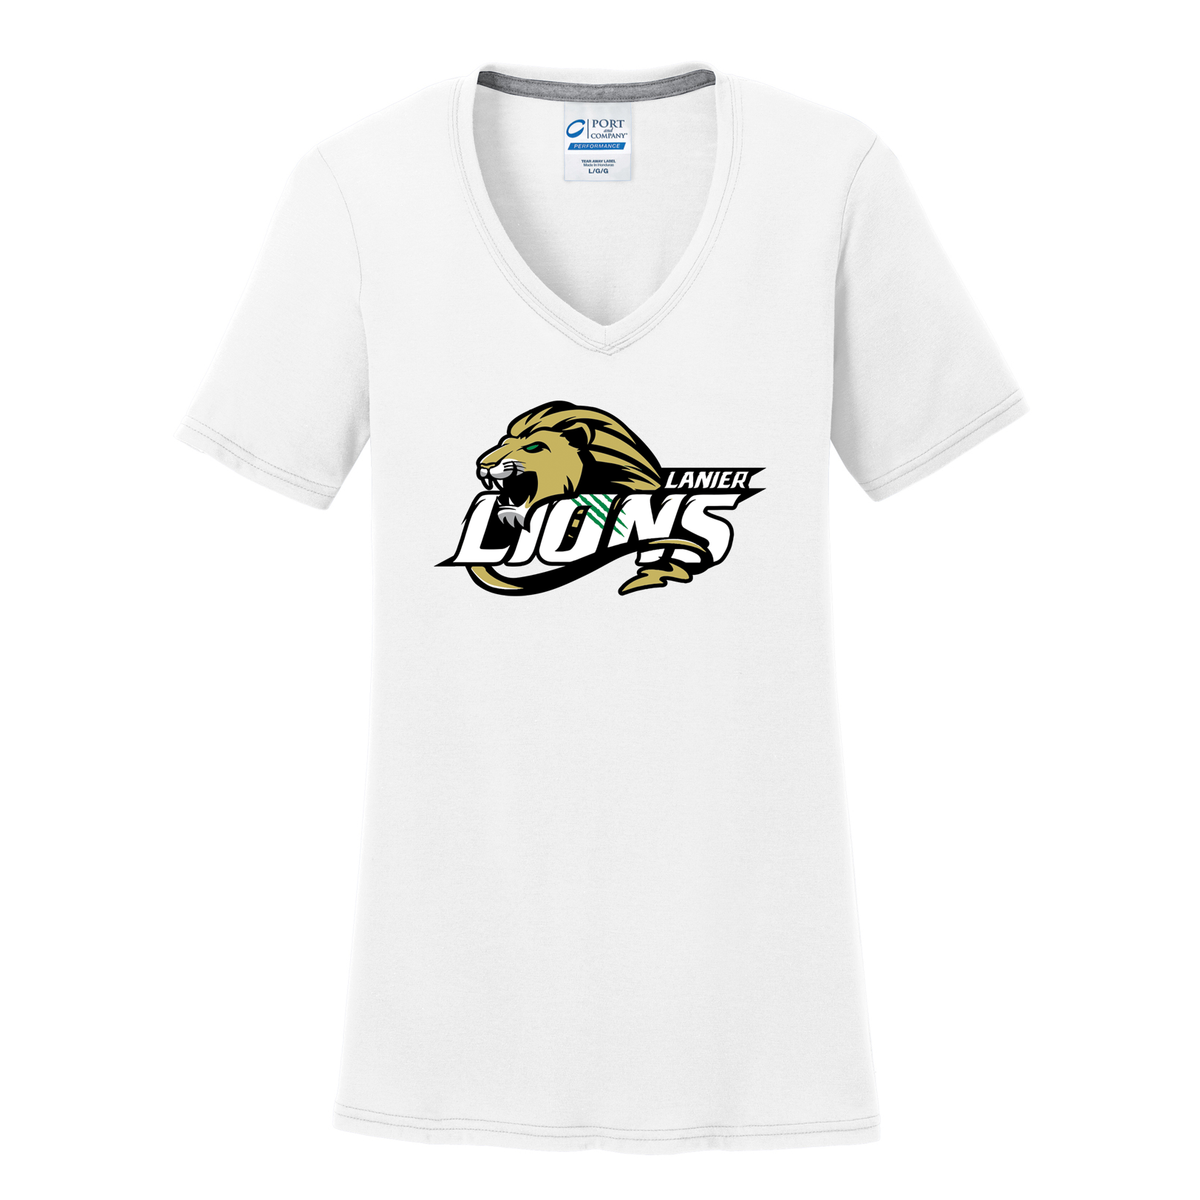 Lanierland Lions Women's T-Shirt